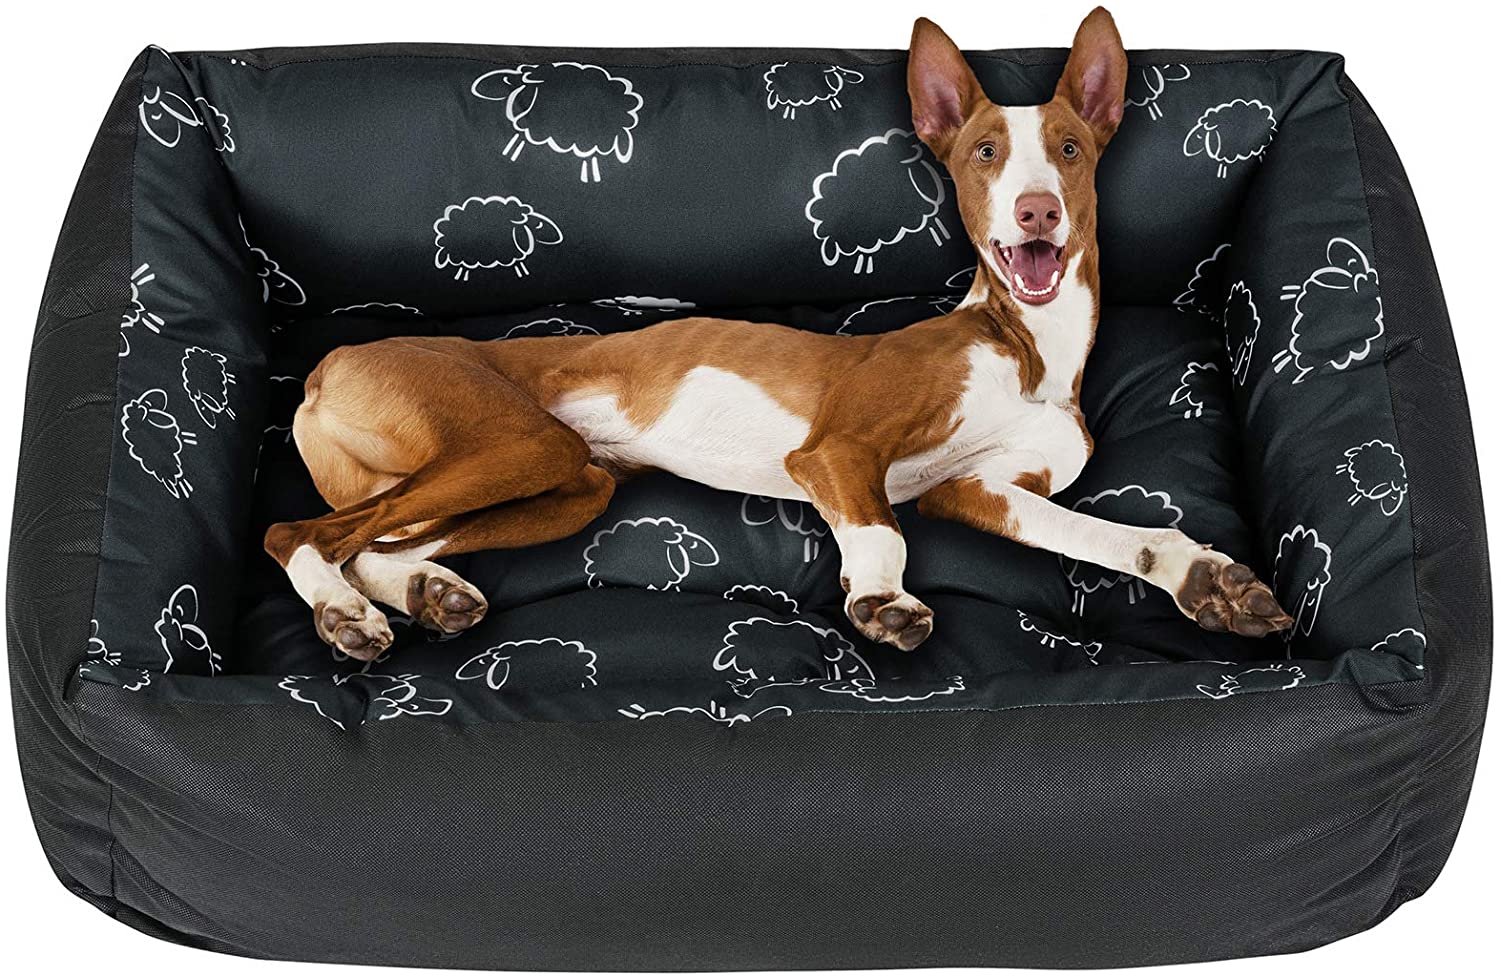 Hundeschlafplätze: Komfort für den Hund — alsa-hundewelt